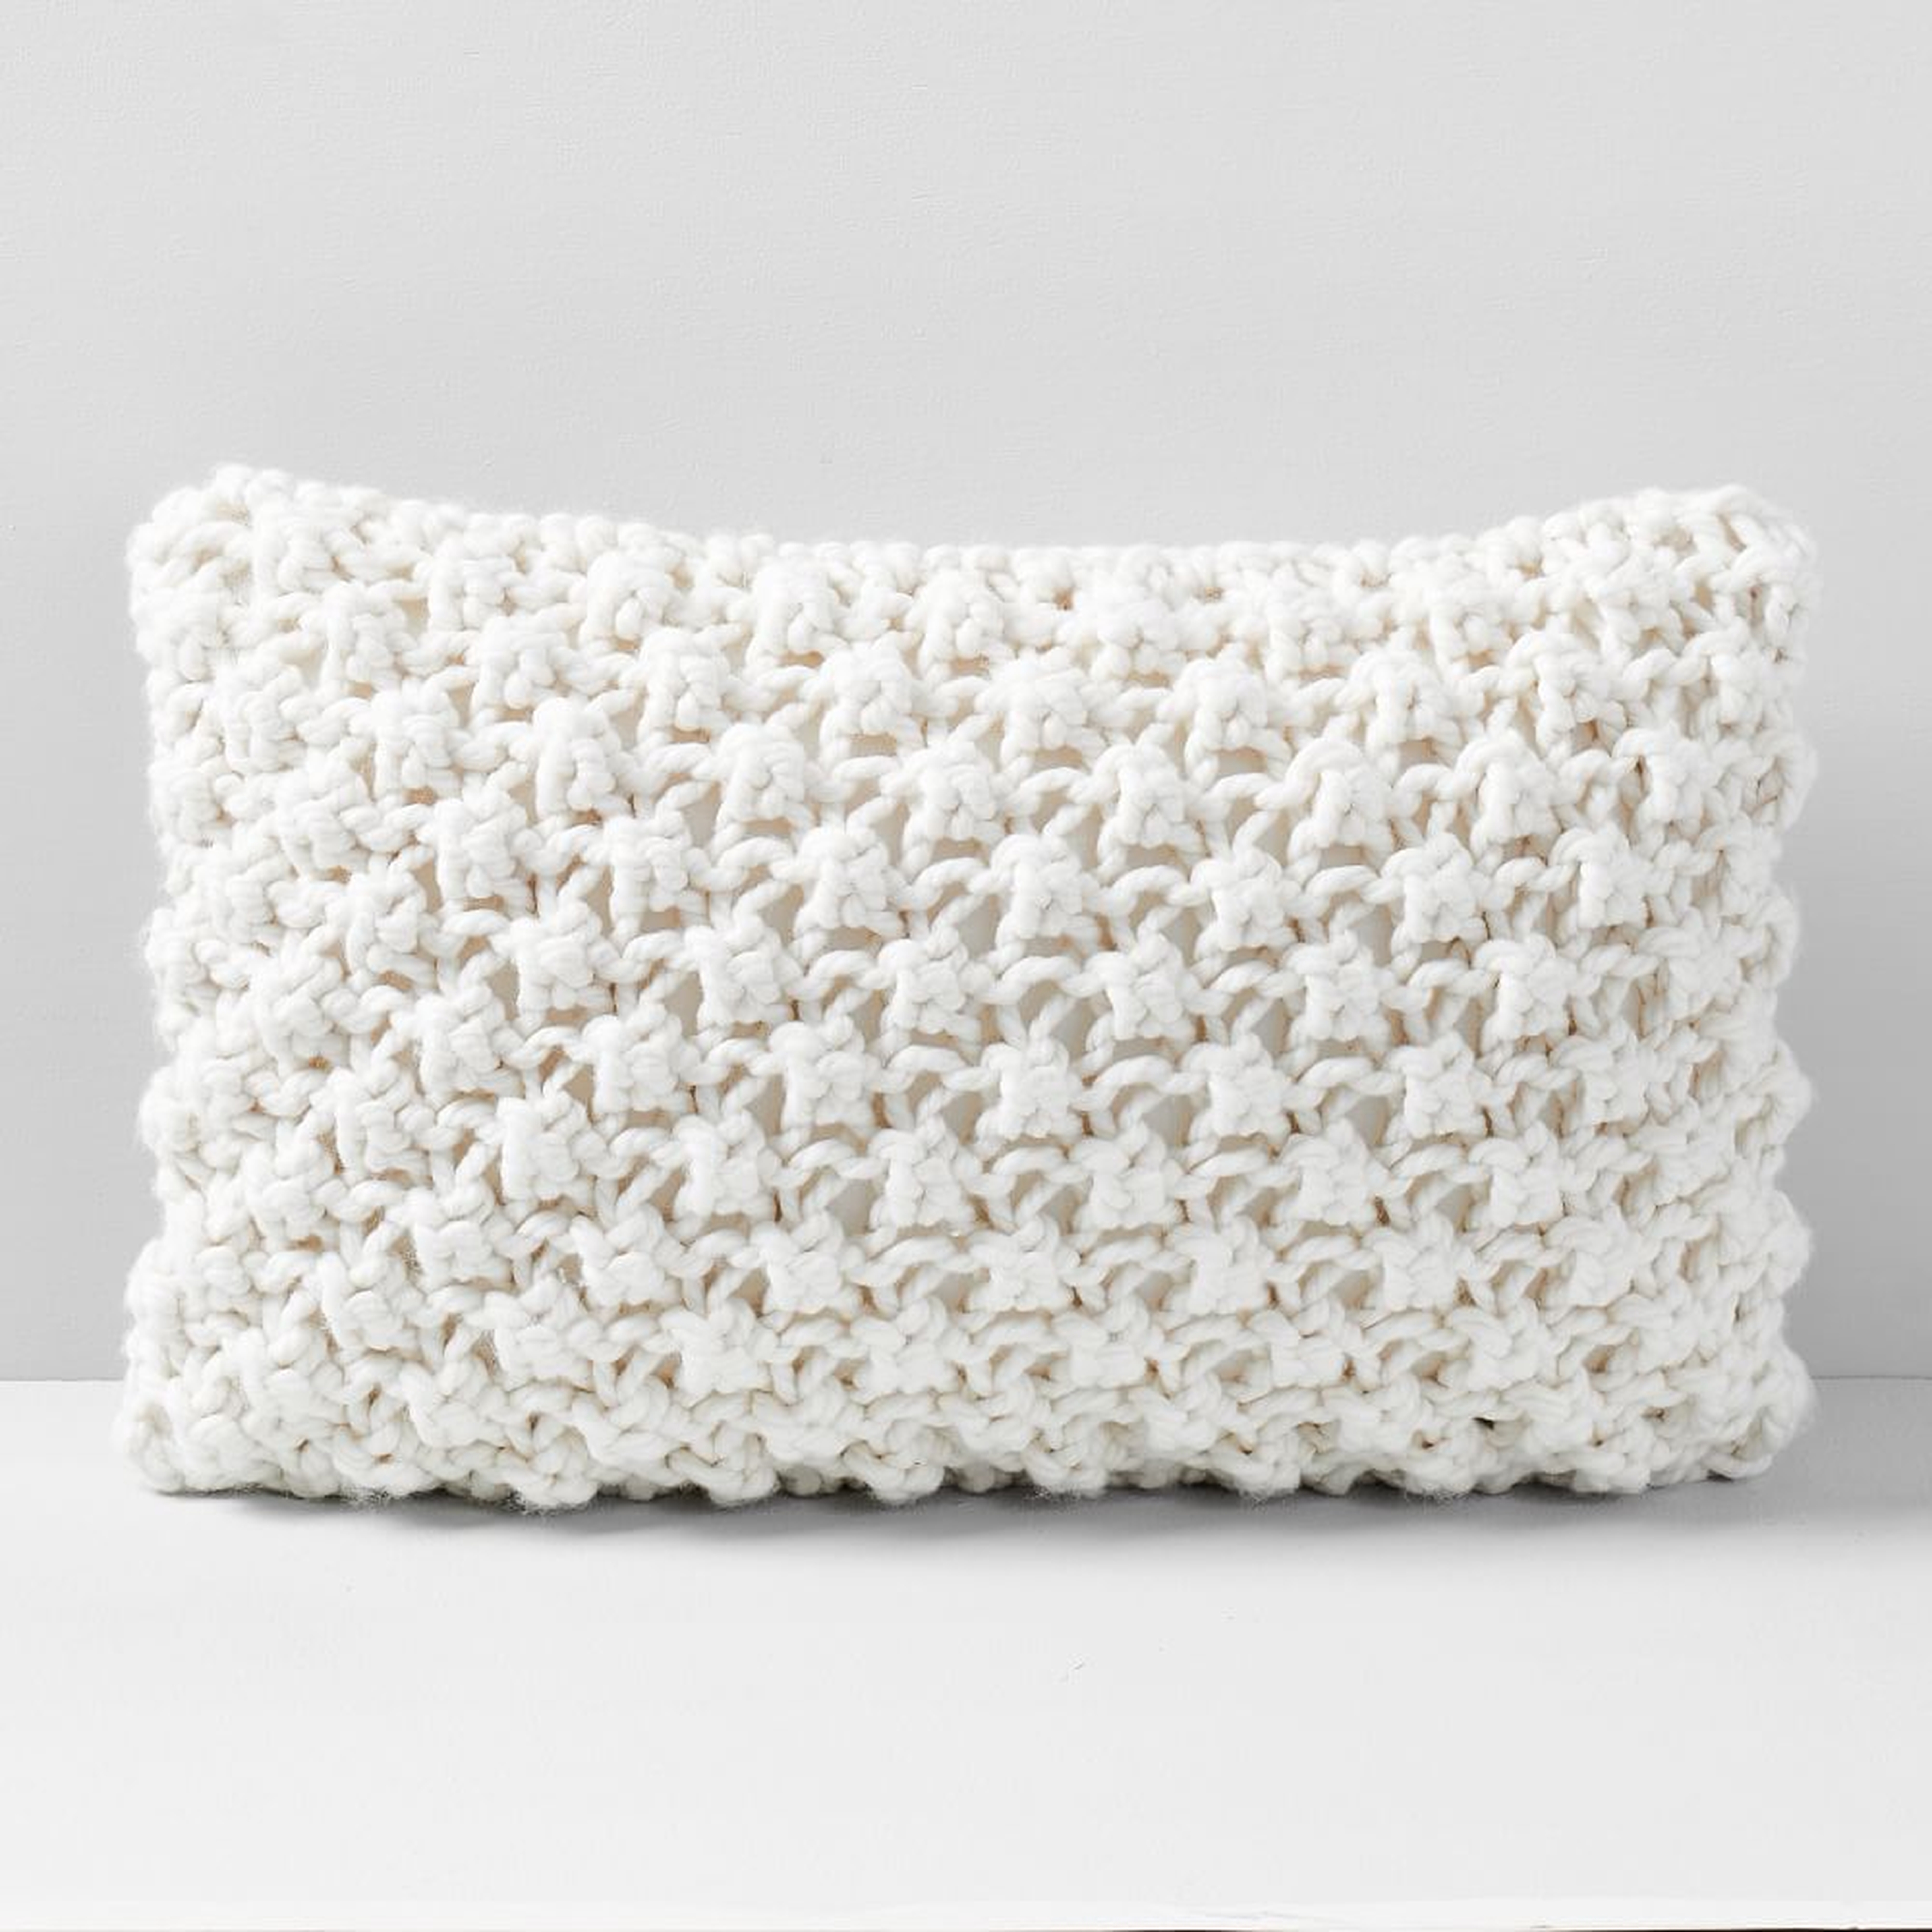 Bobble Knit Pillow Case, Natural, 12"x21" - West Elm